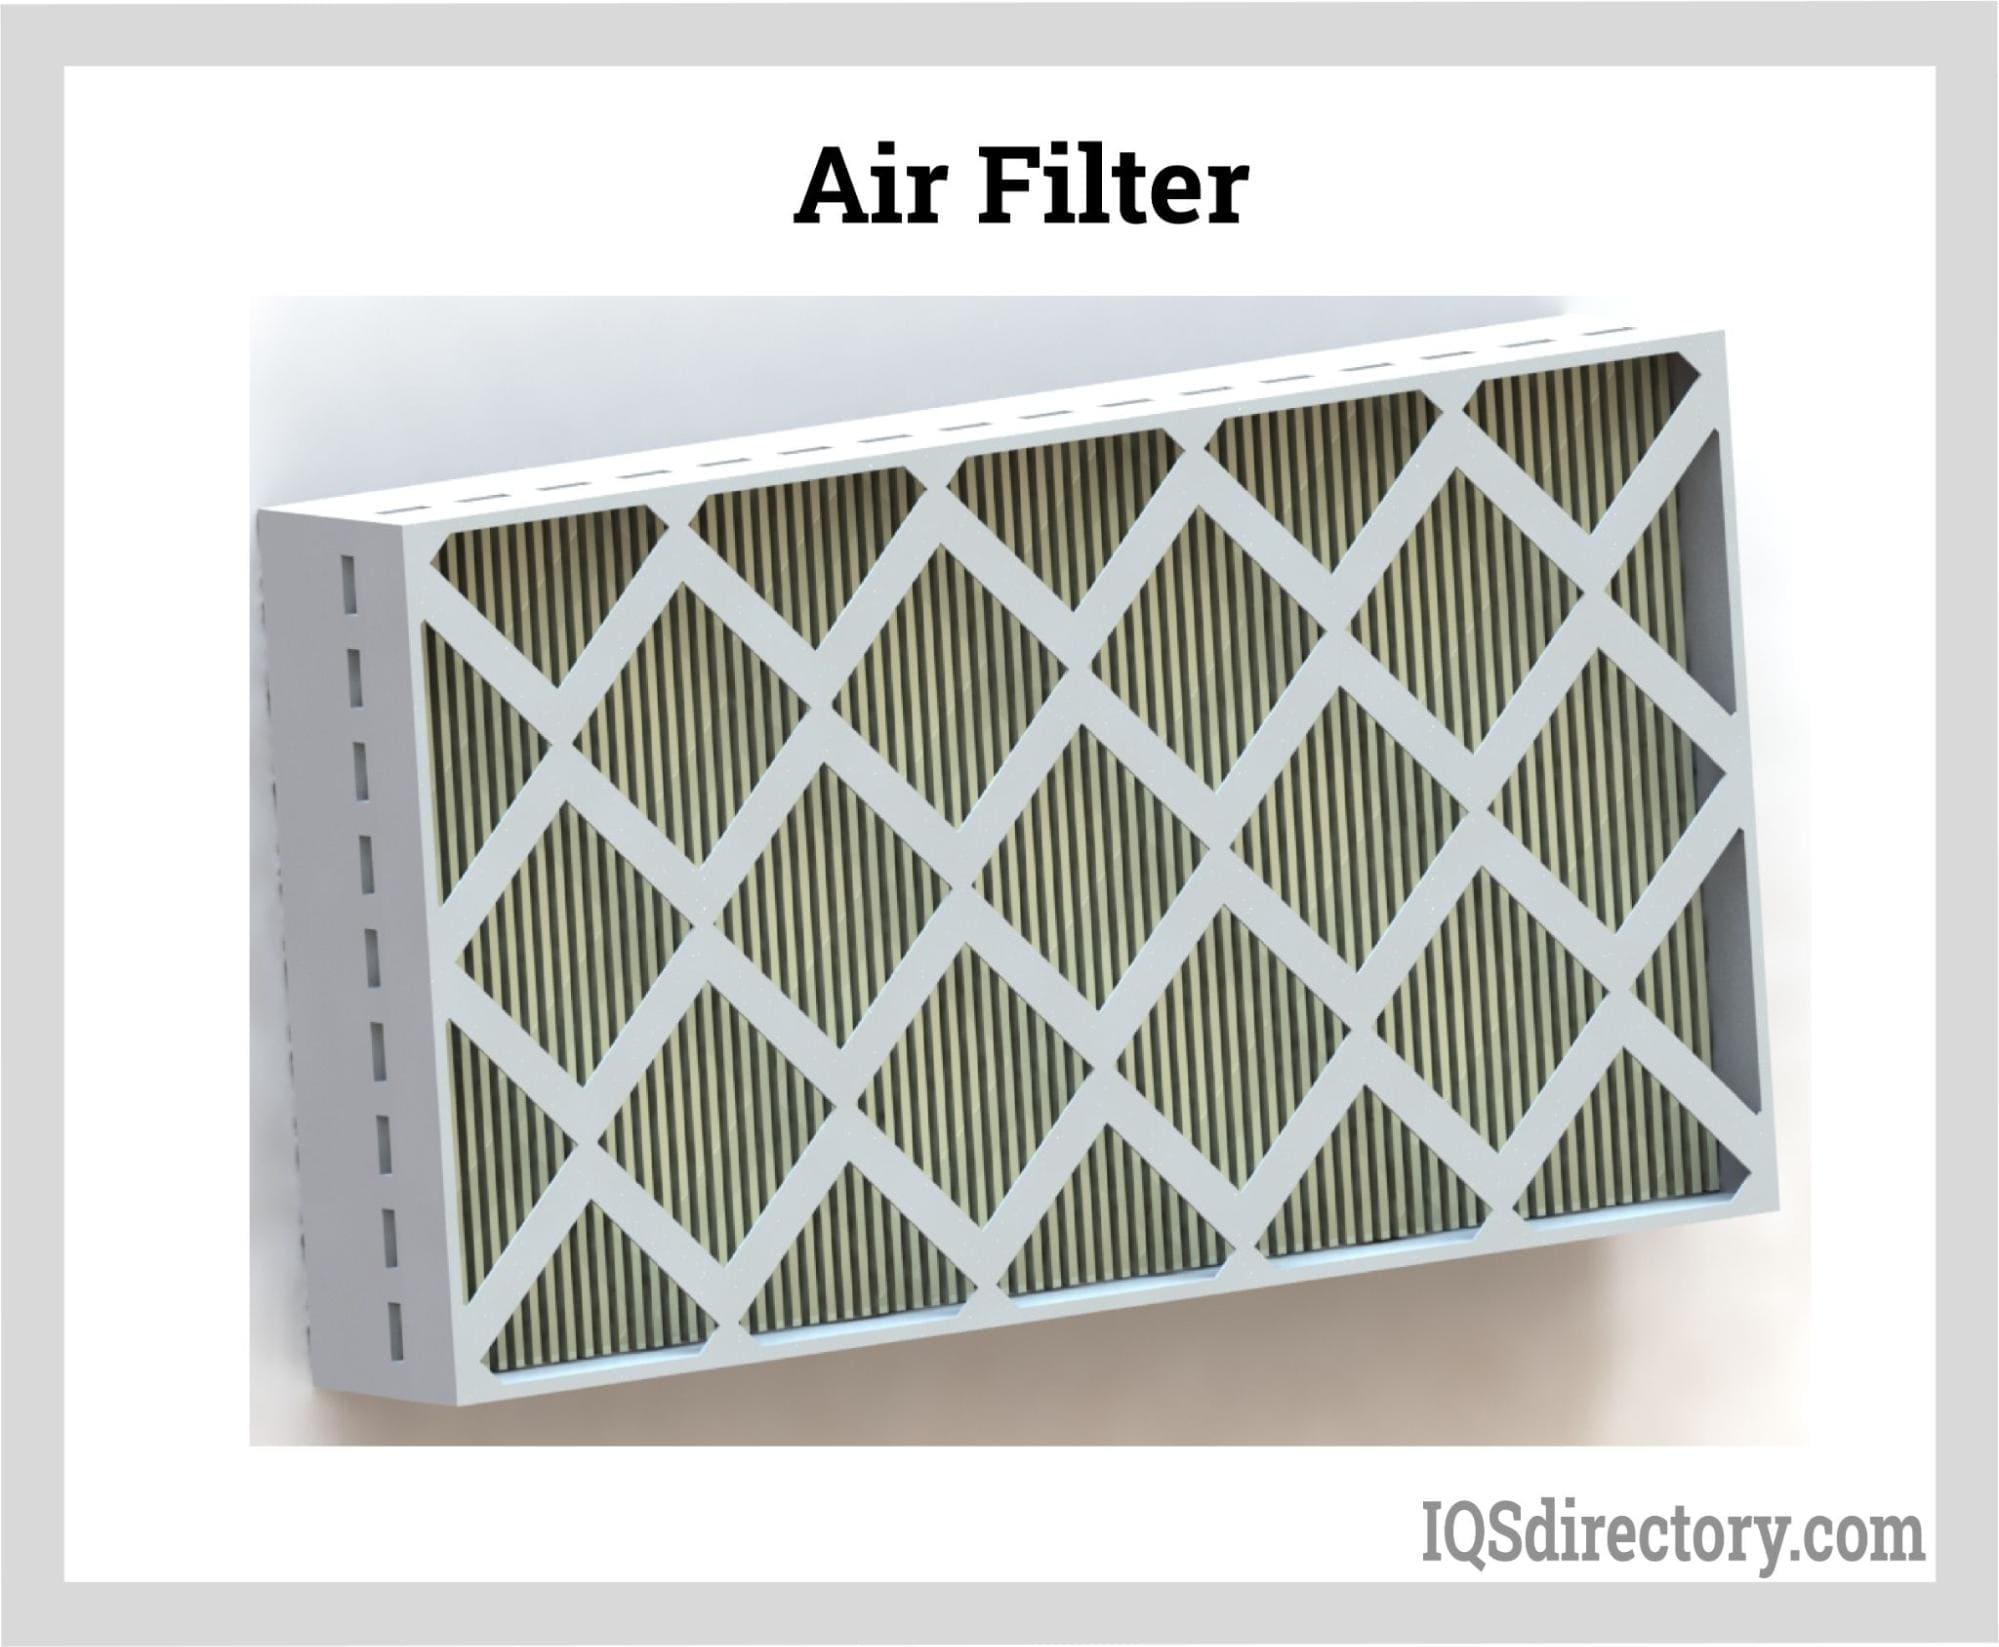 Air Filter Material